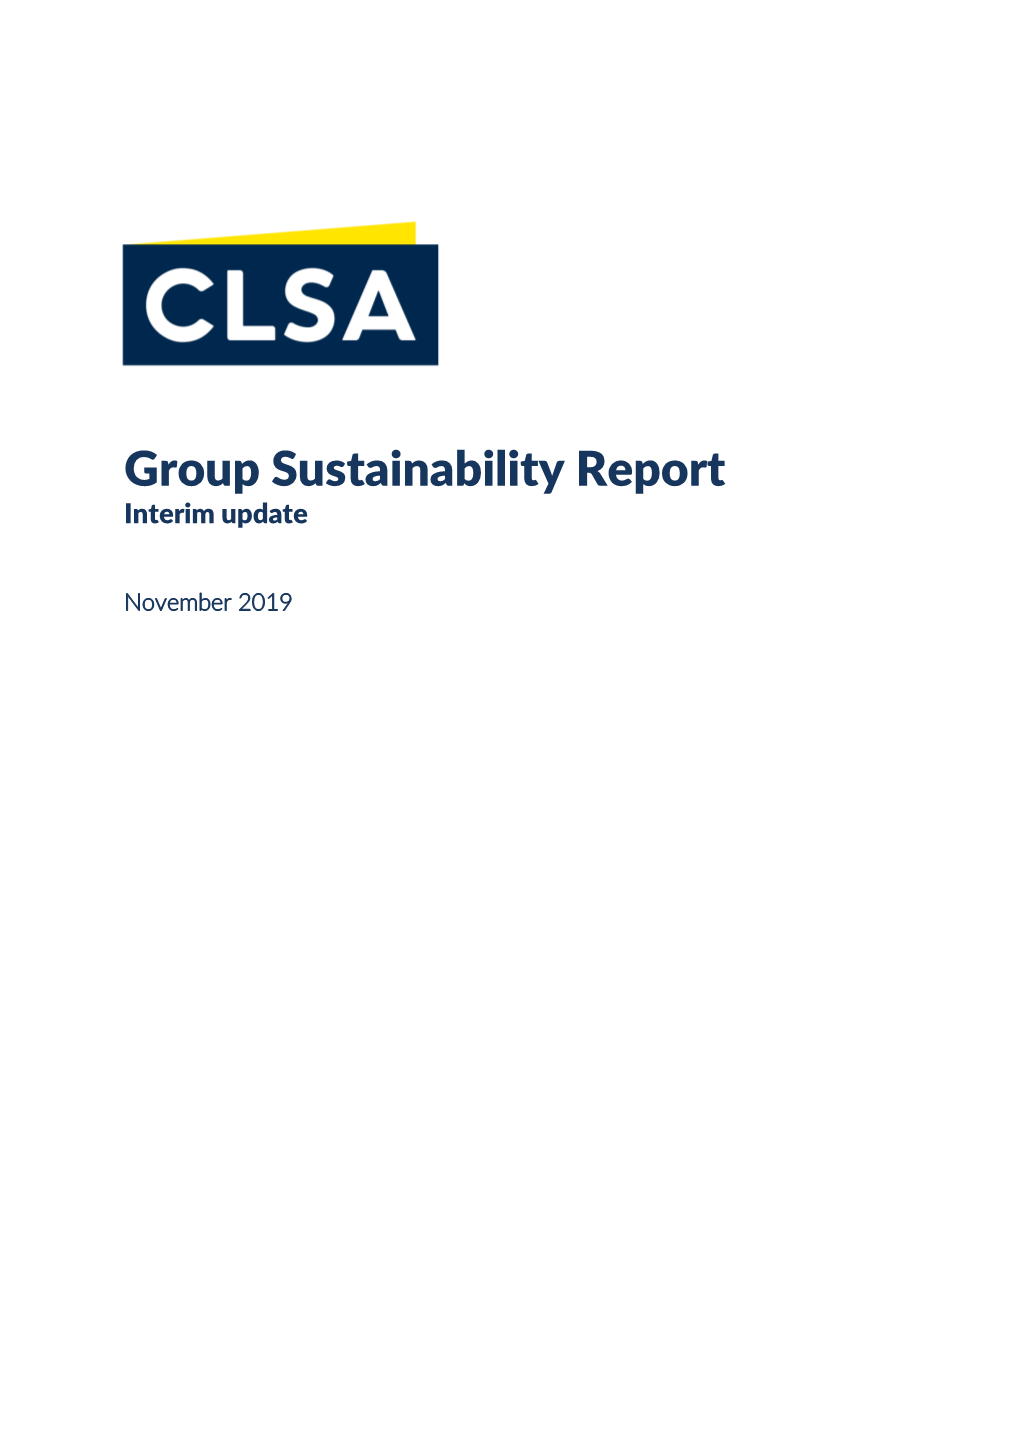 Group Sustainability Report Interim Update